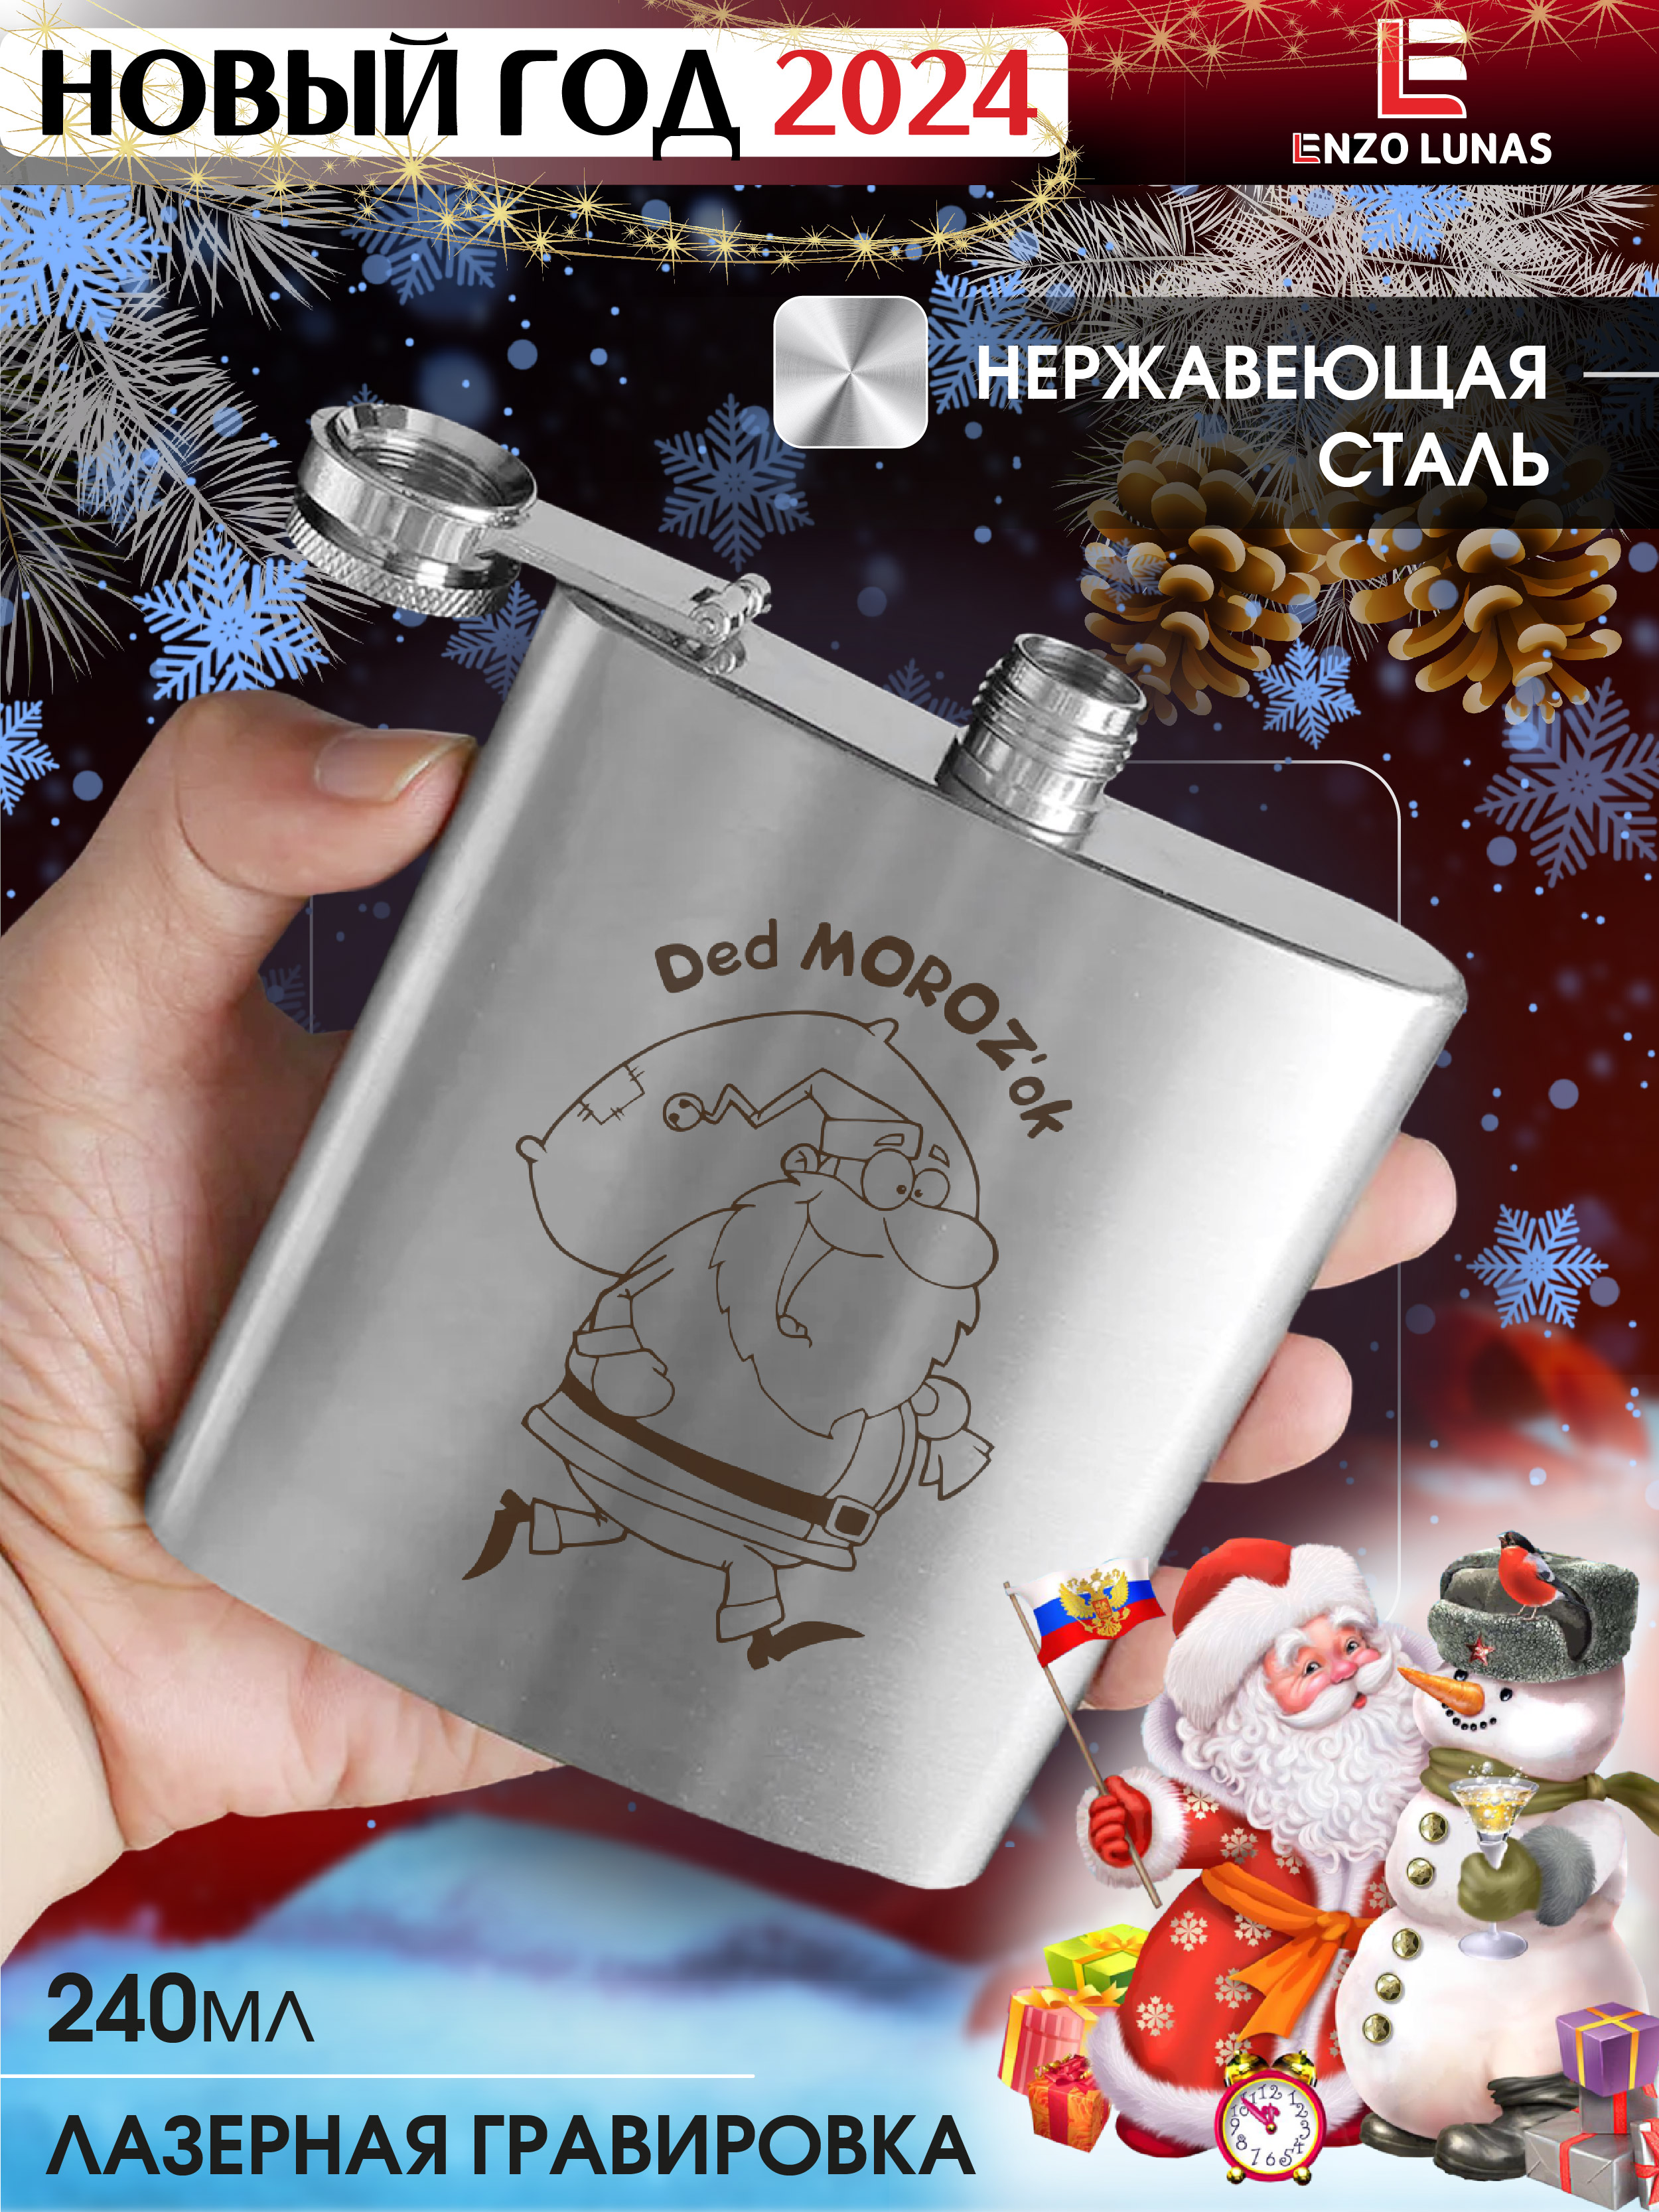 Фляжка Новый год 2024 Ded Moroz'OK Enzo Lunas, 240мл